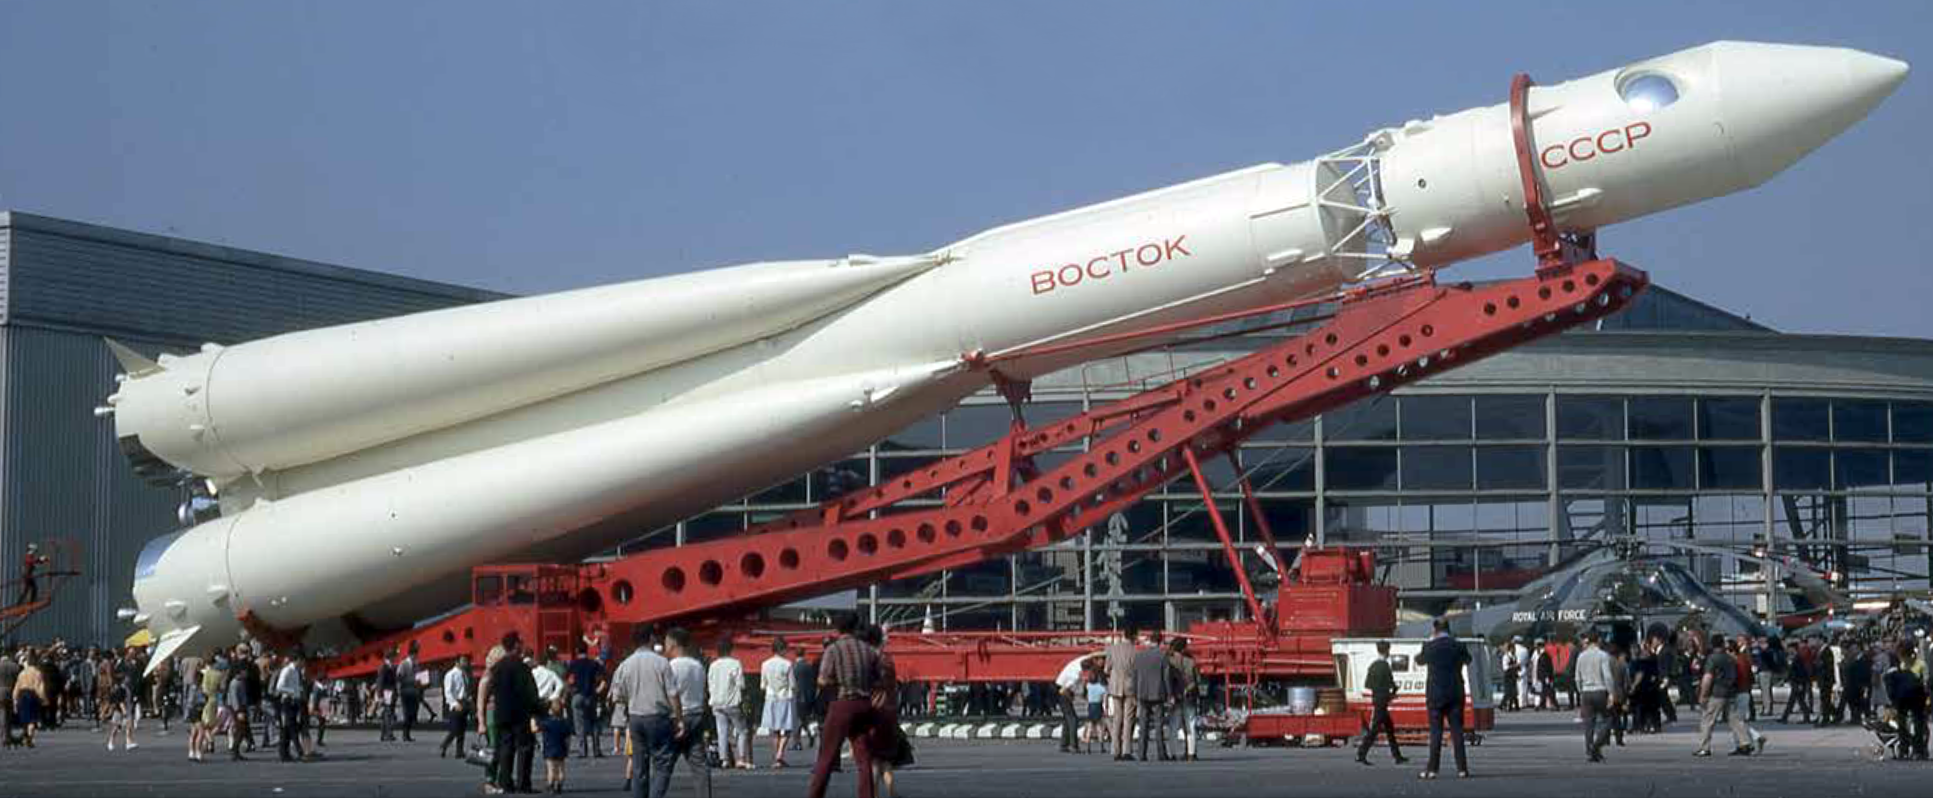 Ракетоноситель восток. Ракета Восток 1. Восток ракета-носитель Гагарина. Ракетоноситель Восток 1. Ракета носитель Восток 8к72к.